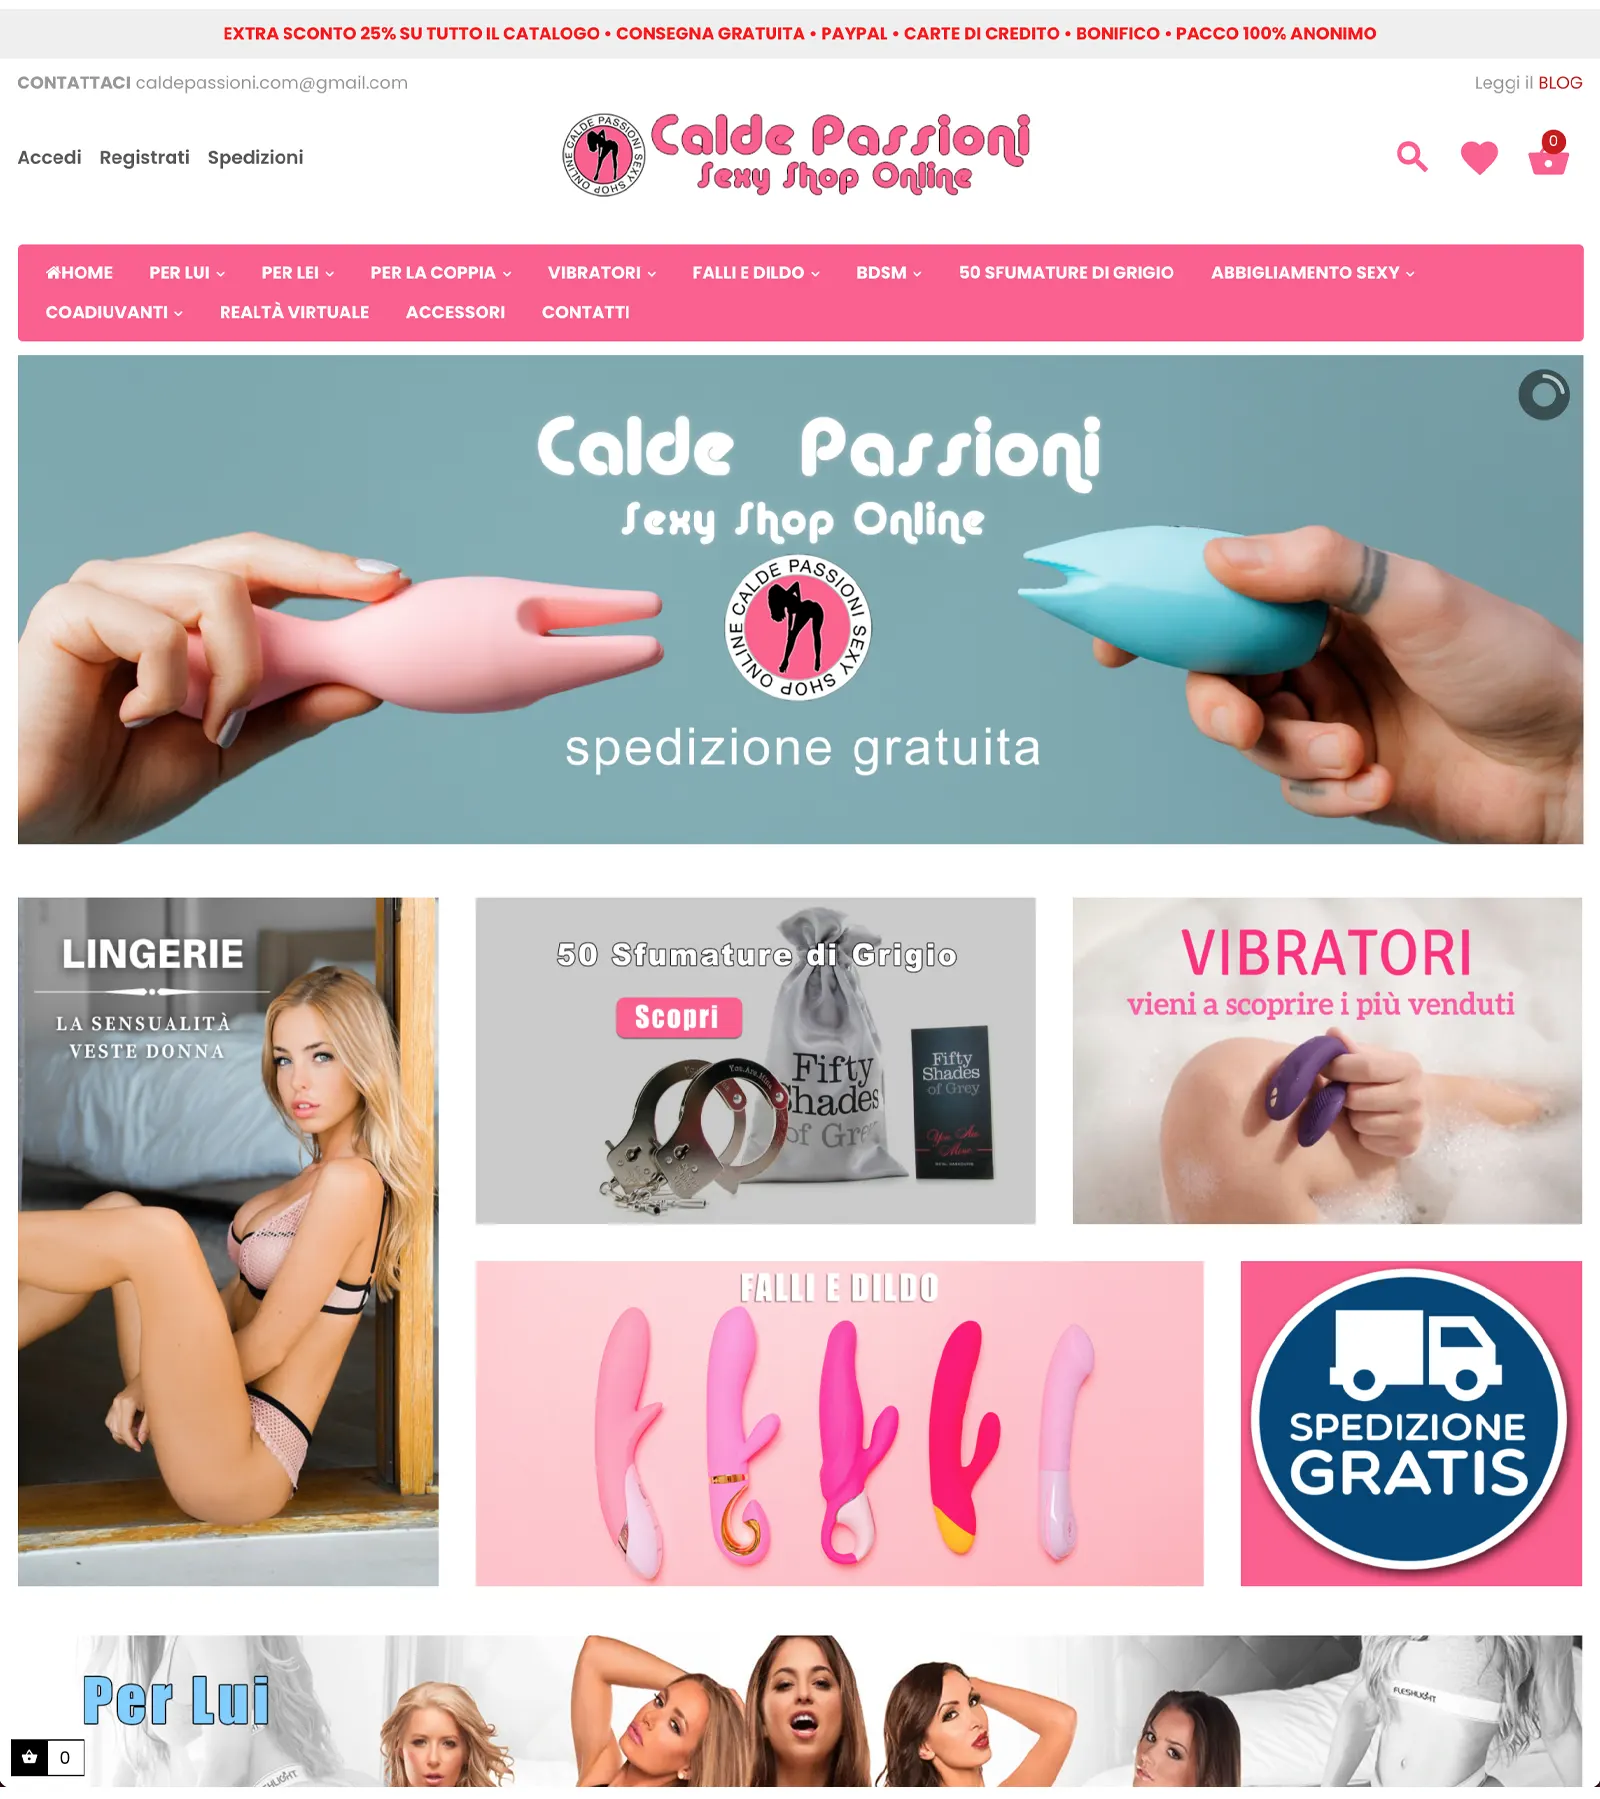 Portfolio Publivirtual - Web Agency Roma e Pescara, Progetto Calde Passioni